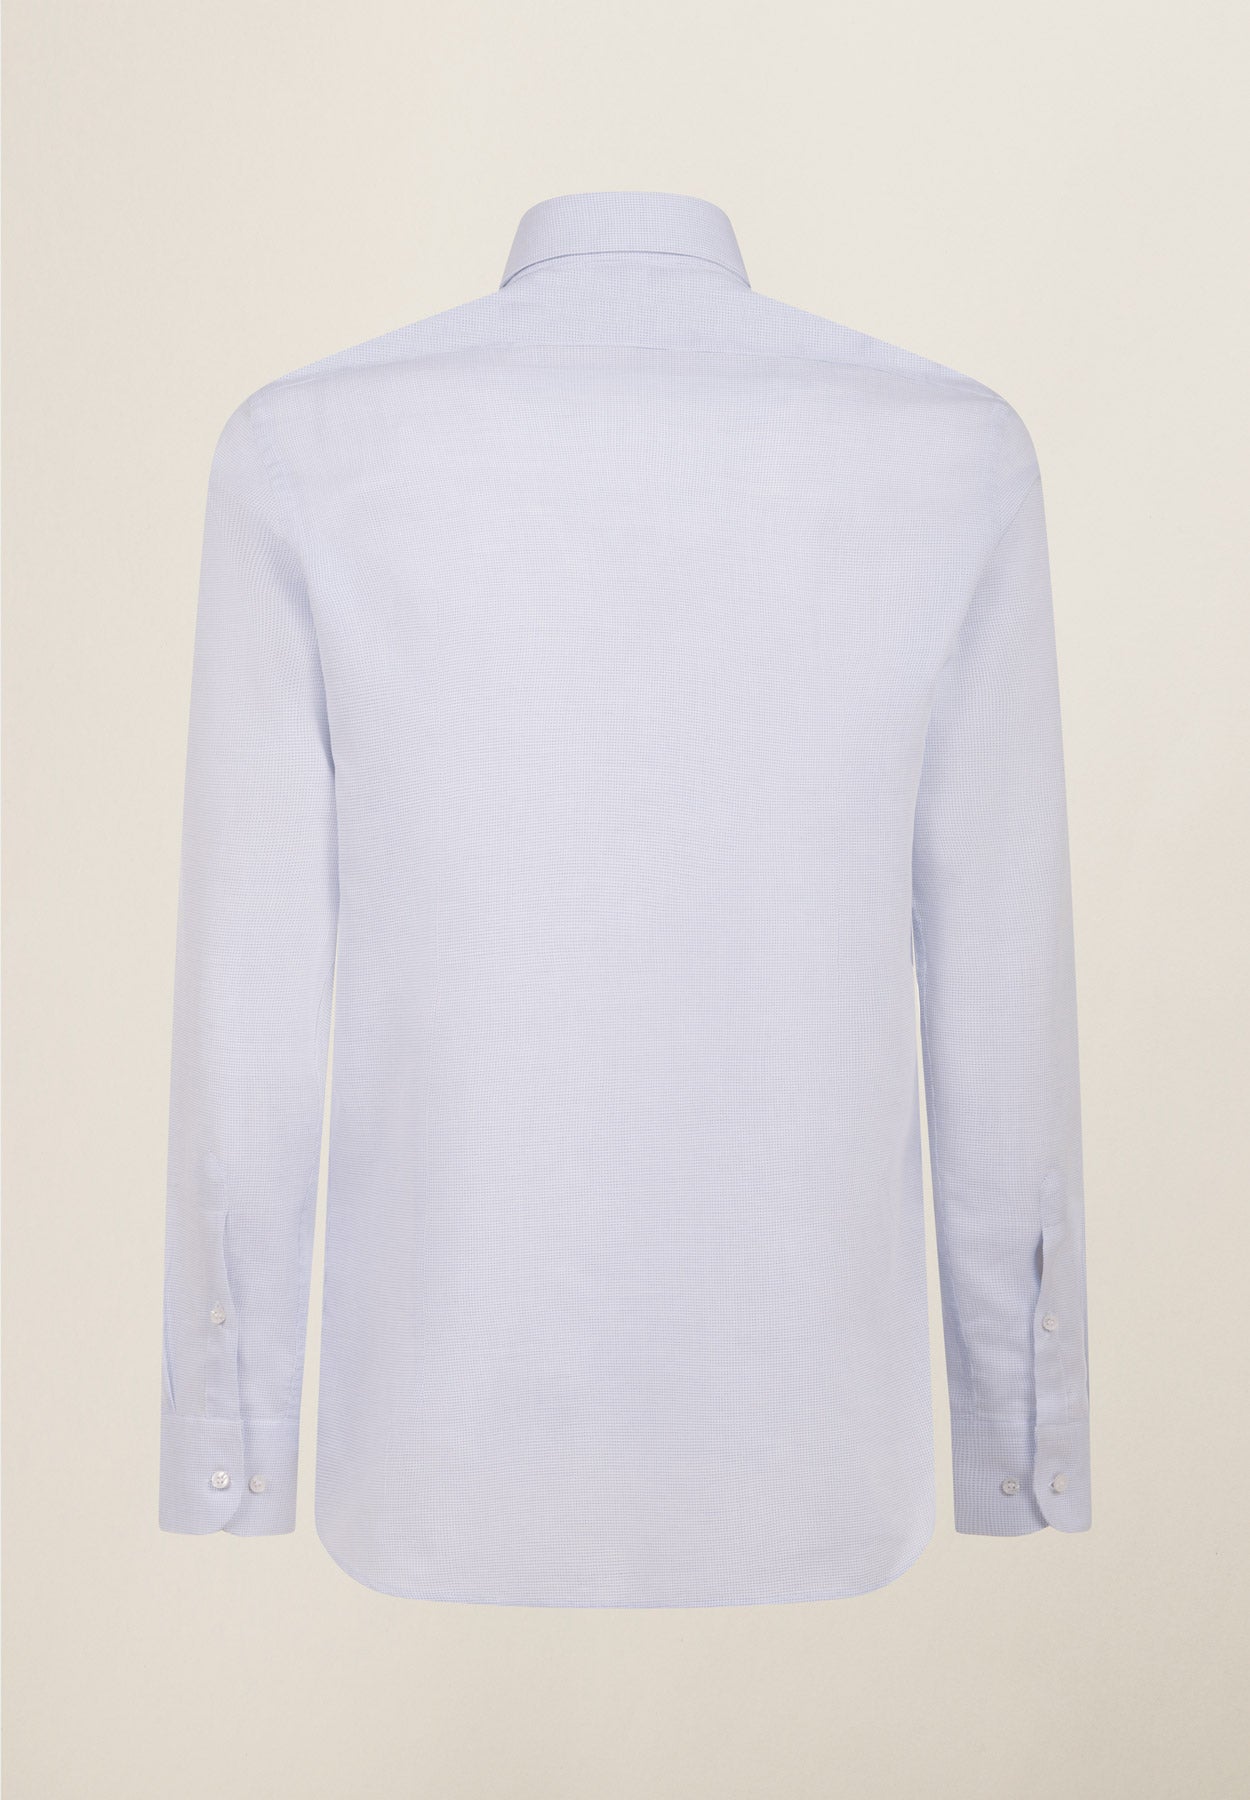 Weißes Hemd mit hellblauem Mikrodesign, Slim-Fit-Baumwolle